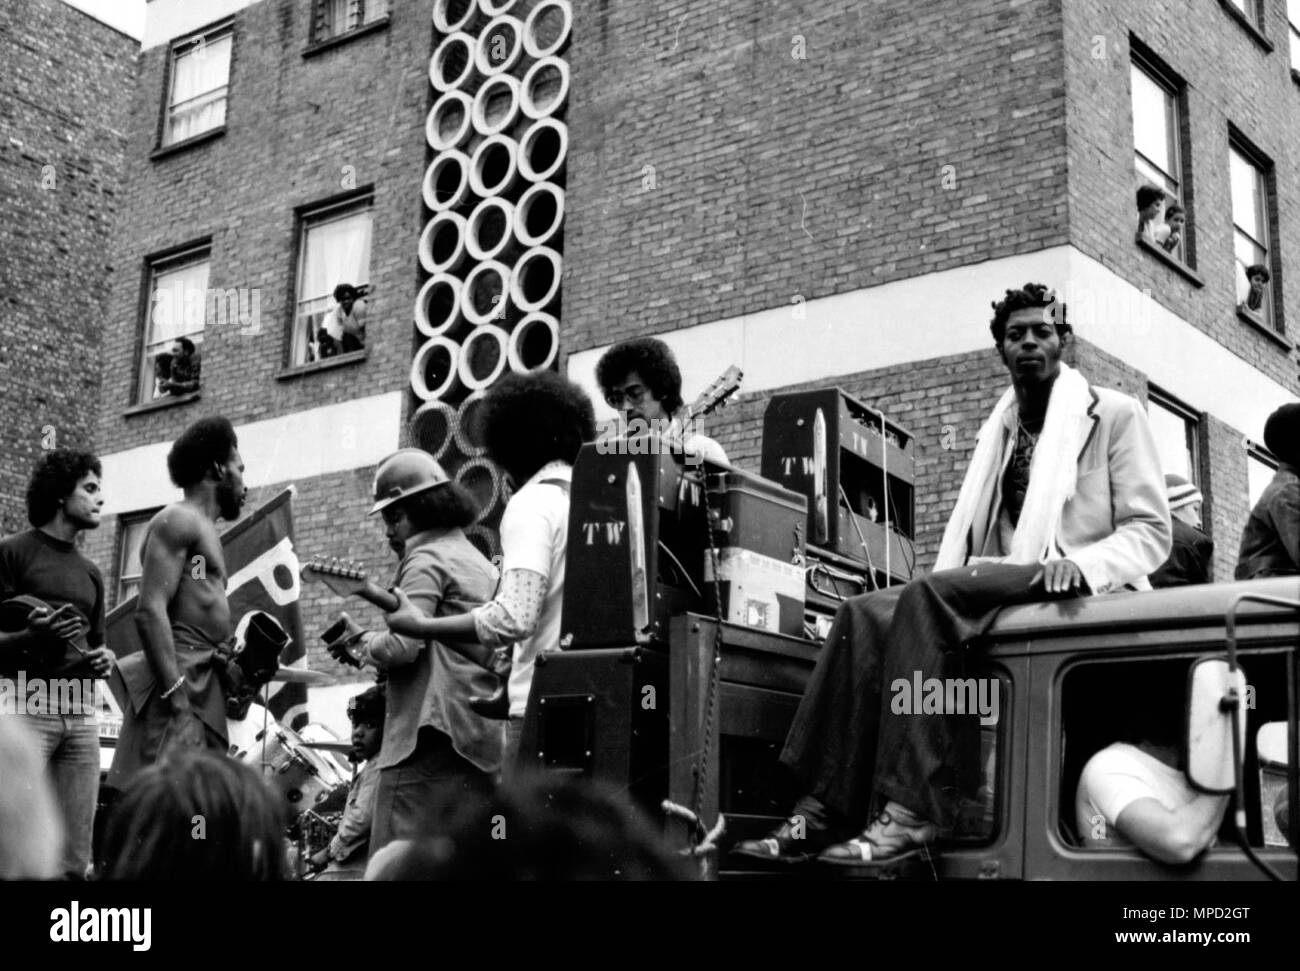 Das Notting Hill Karneval in den Straßen von West London 1976, der größten Straße Festival in Europa. In diesem Foto sind die eisernen Männer, die oft an J'ouvert spielen, ein großes Straßenfest in Trinidad. Große Geschichte des Karnevals Bilder. Stockfoto